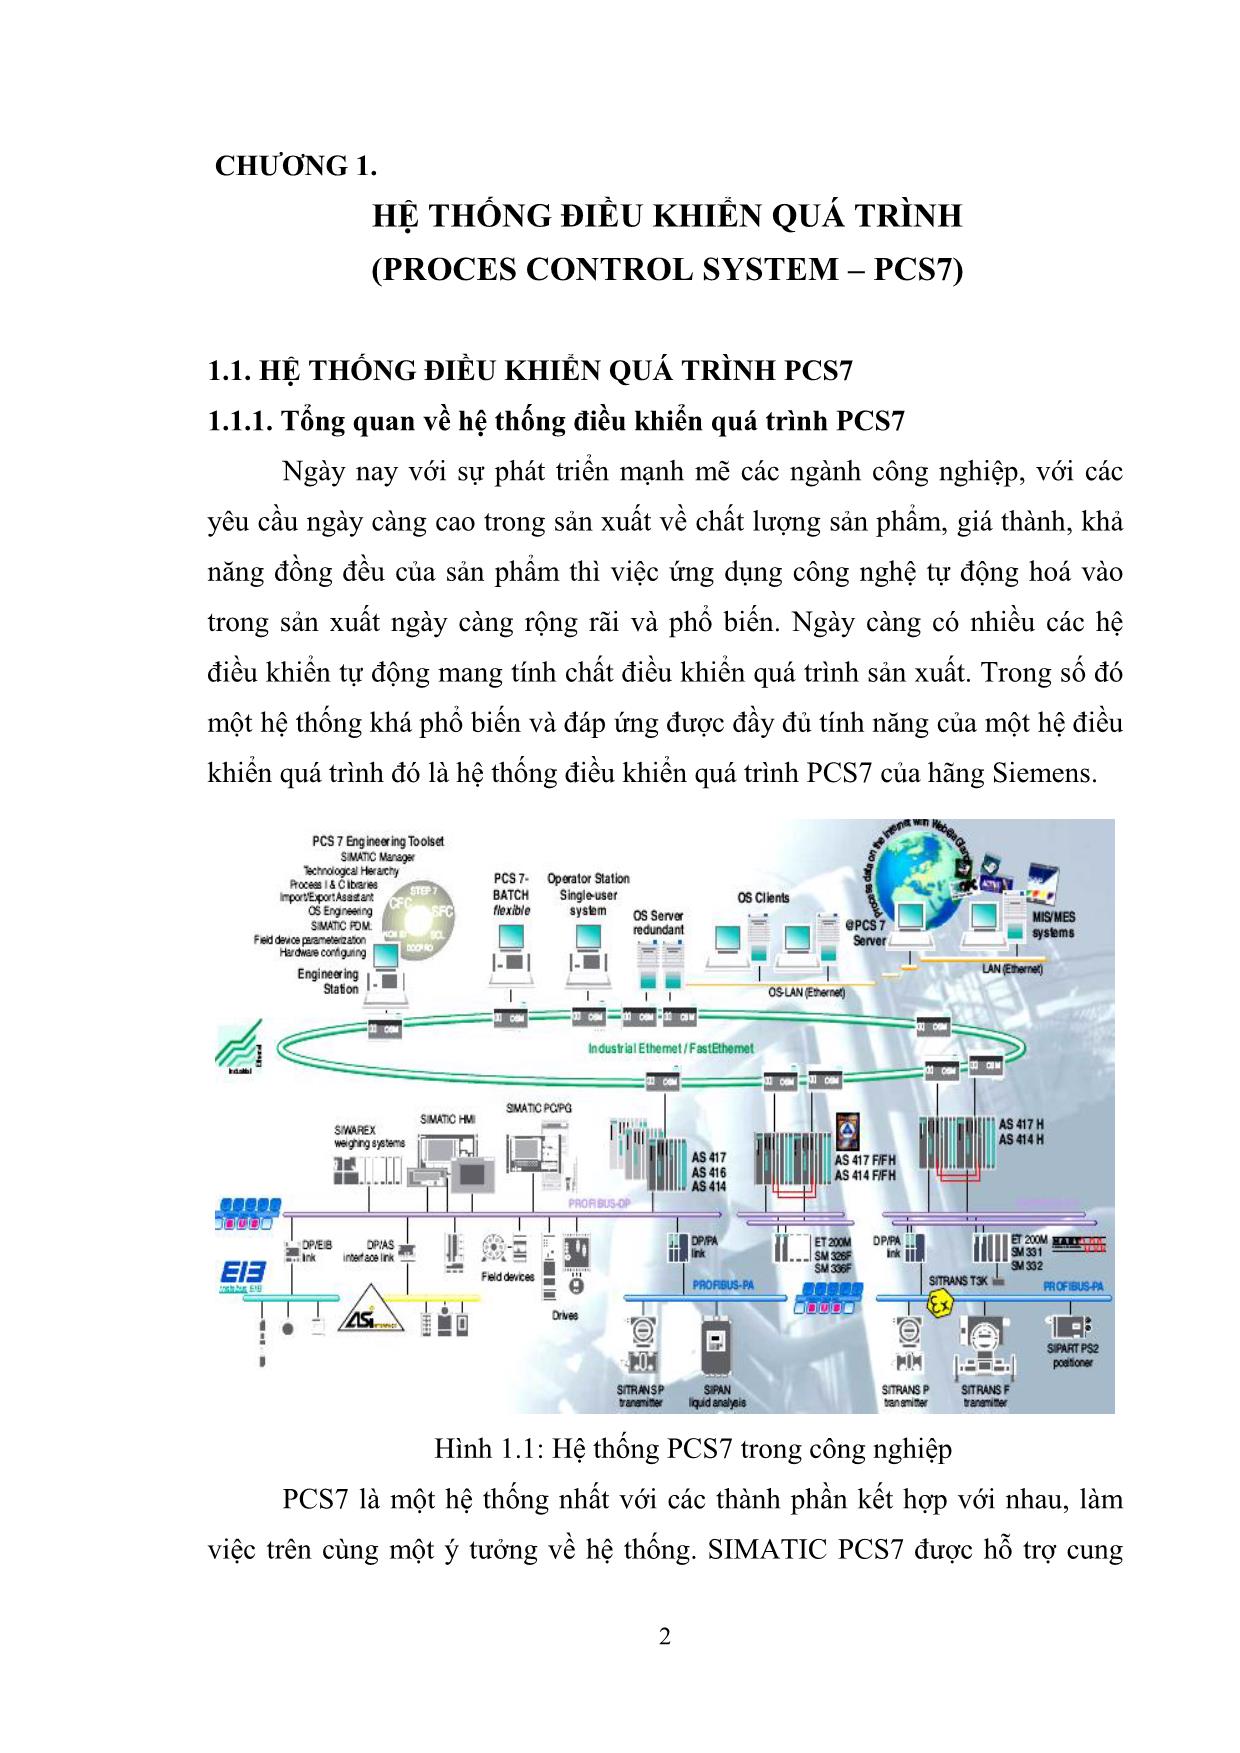 Luận văn Nghiên cứu hệ thống điều khiển quá trình PCS7 của hãng Siemens trang 3